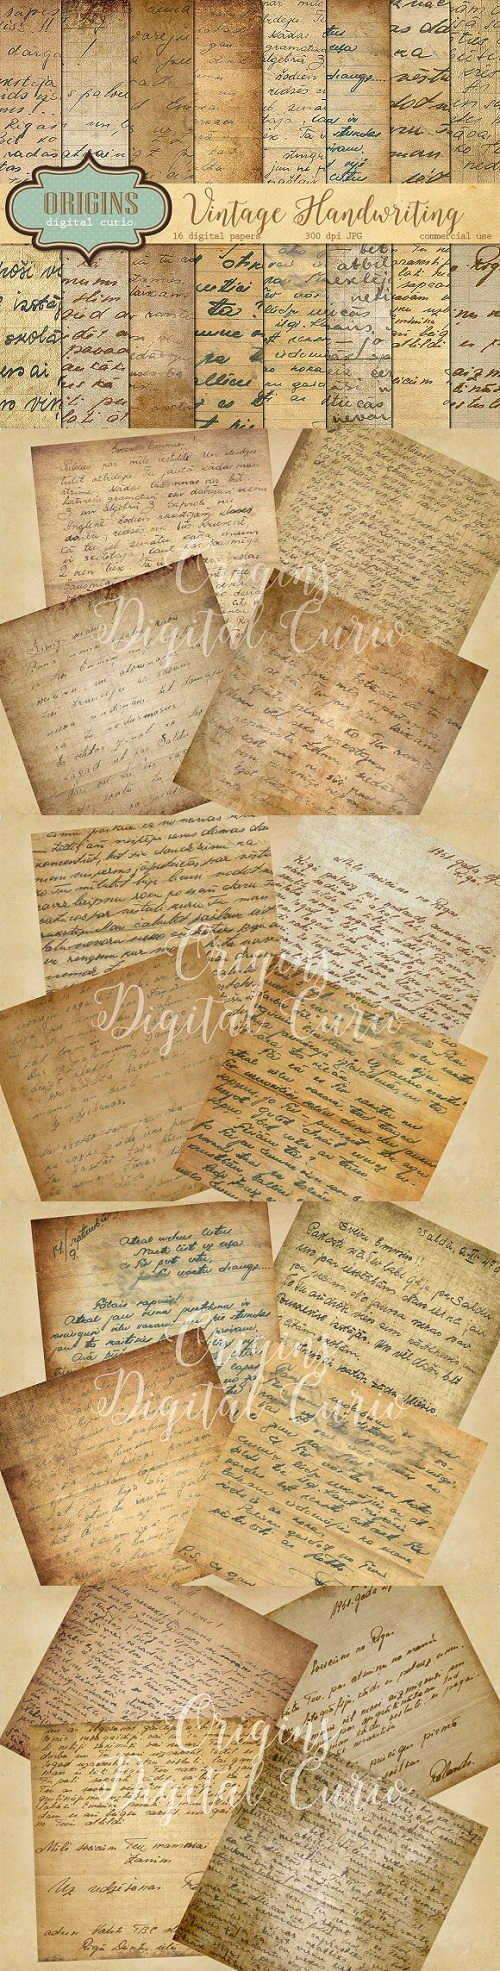 Vintage Handwriting Digital Paper - 402417